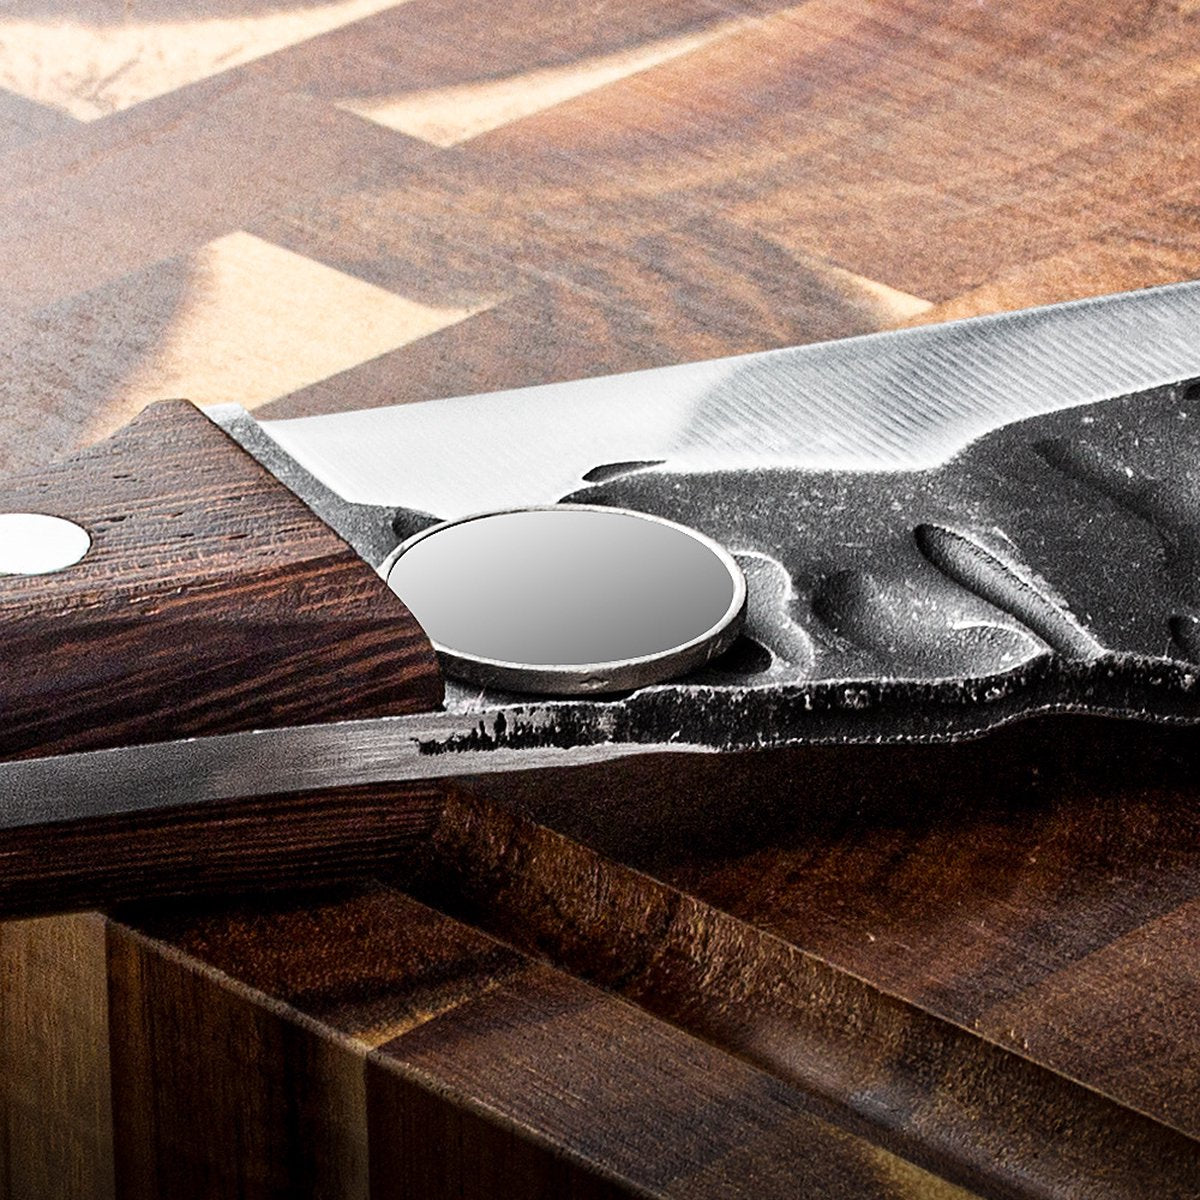 T&amp;M Knives® – Kochmesser aus gehämmertem Stahl